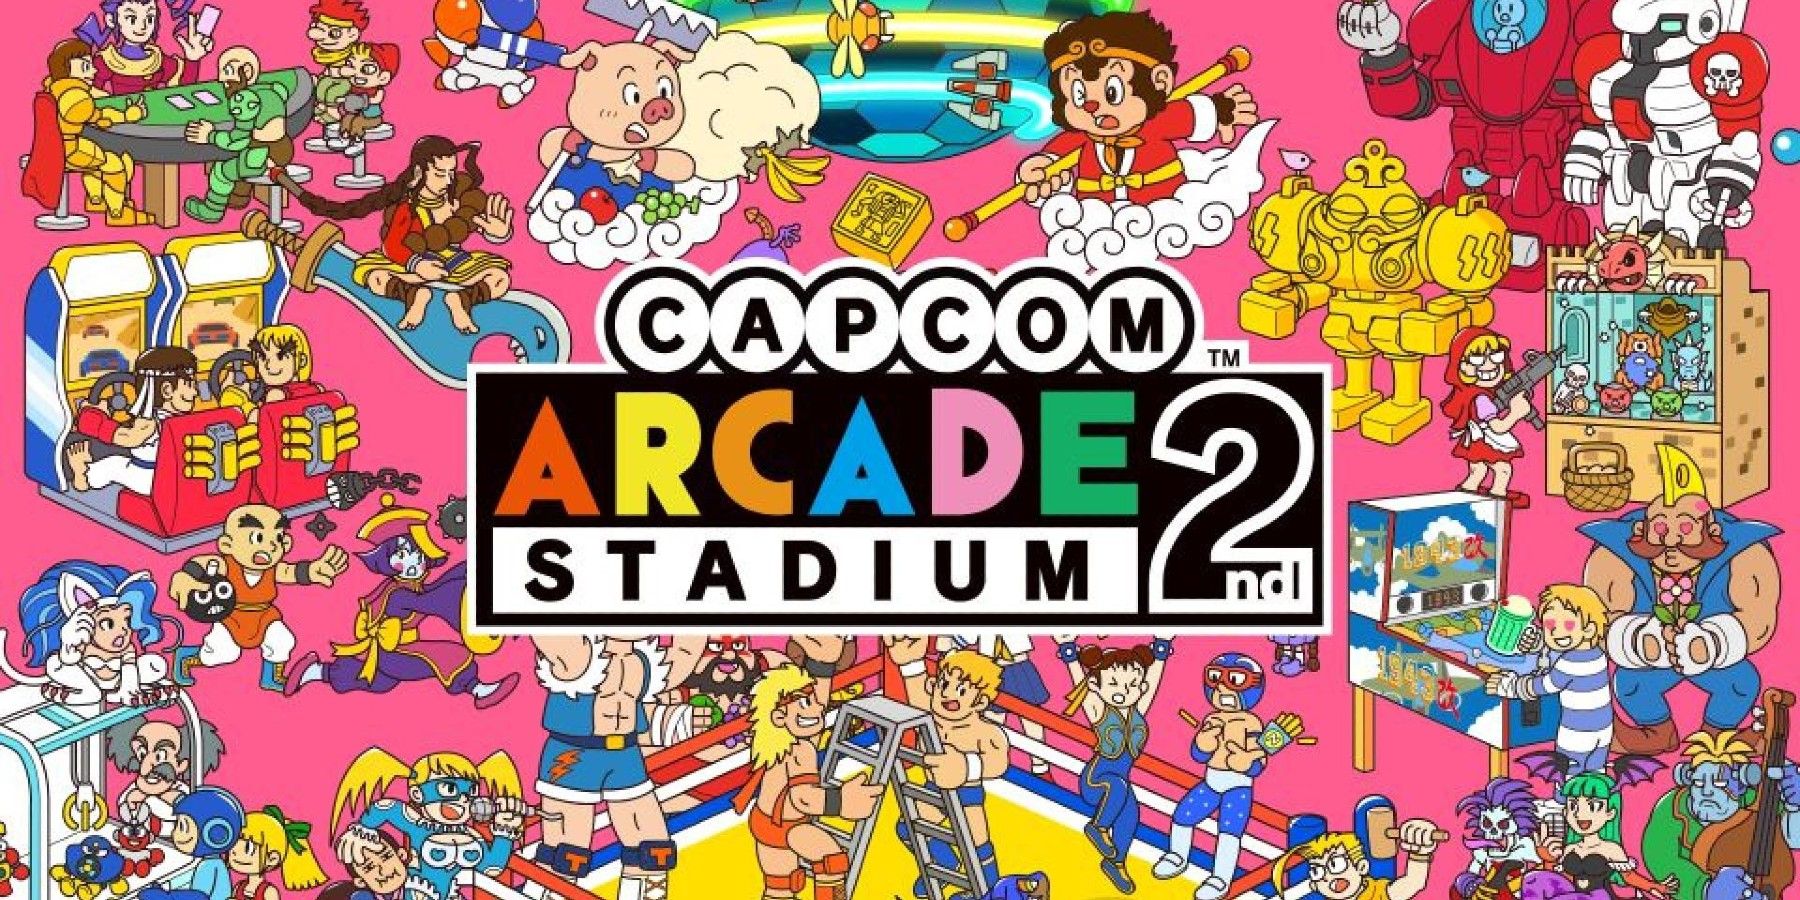 Capcom Arcade 2nd Stadium Cover